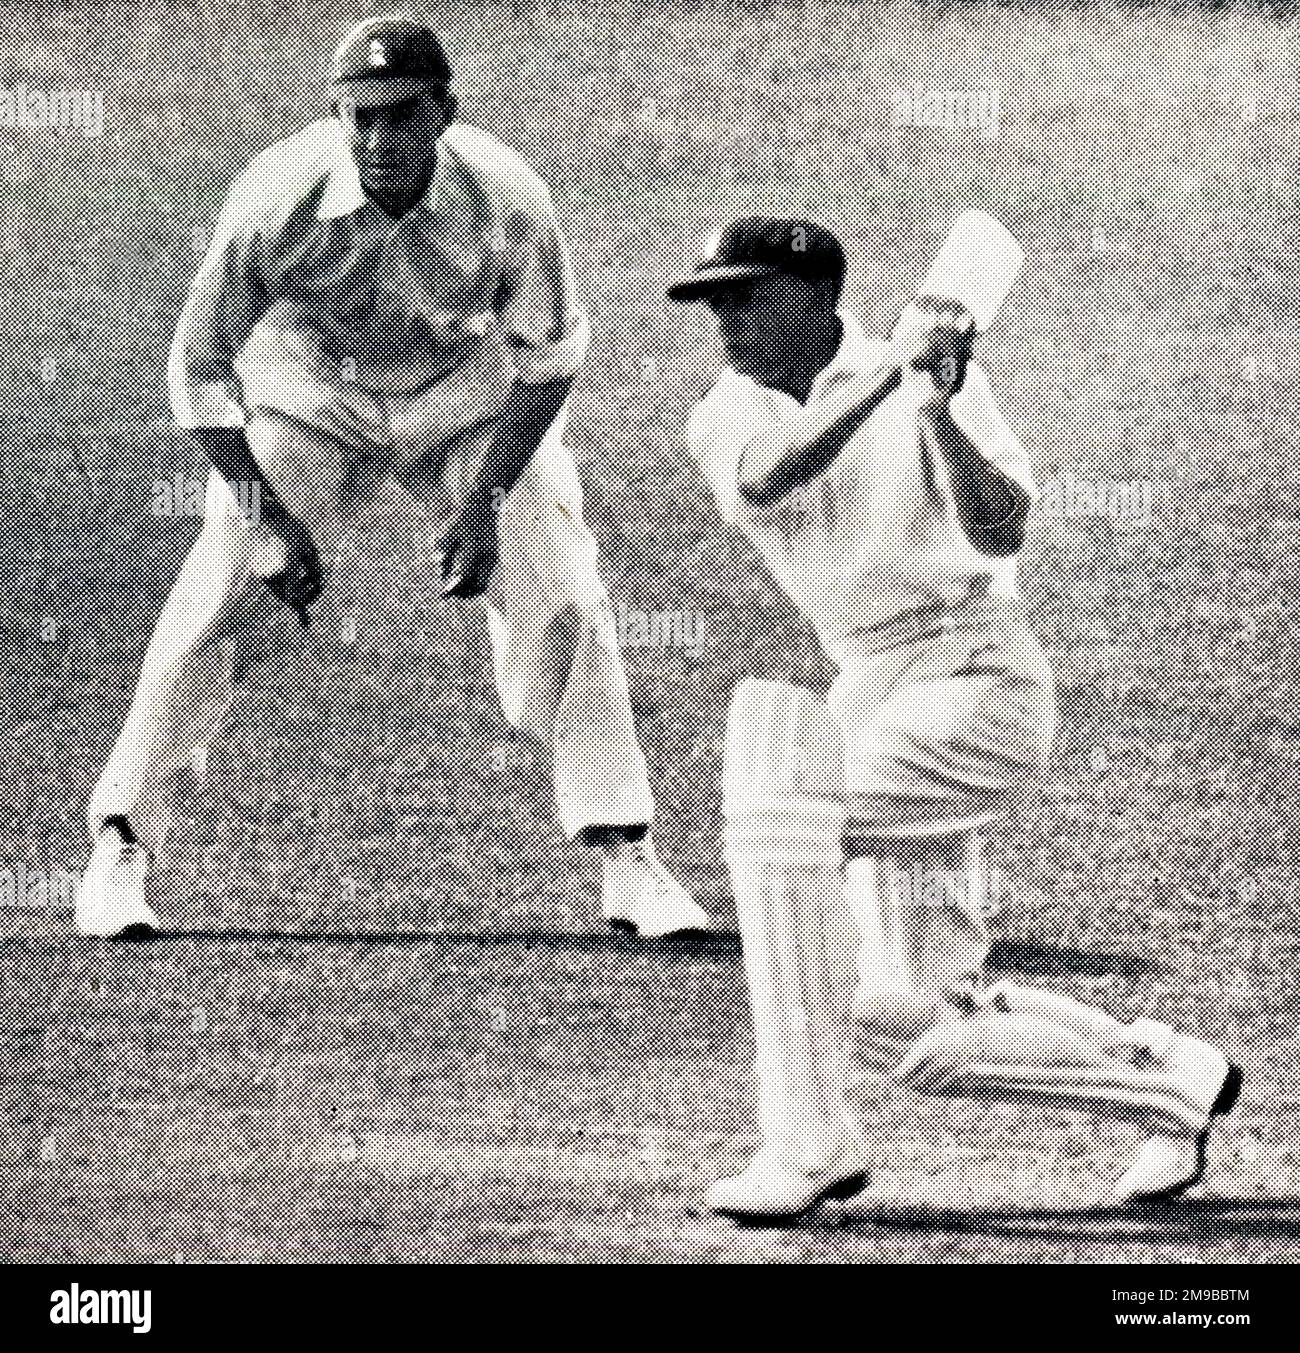 Il cricketer australiano Don Bradman battendo a Perth, Hammond nelle scivolature Foto Stock